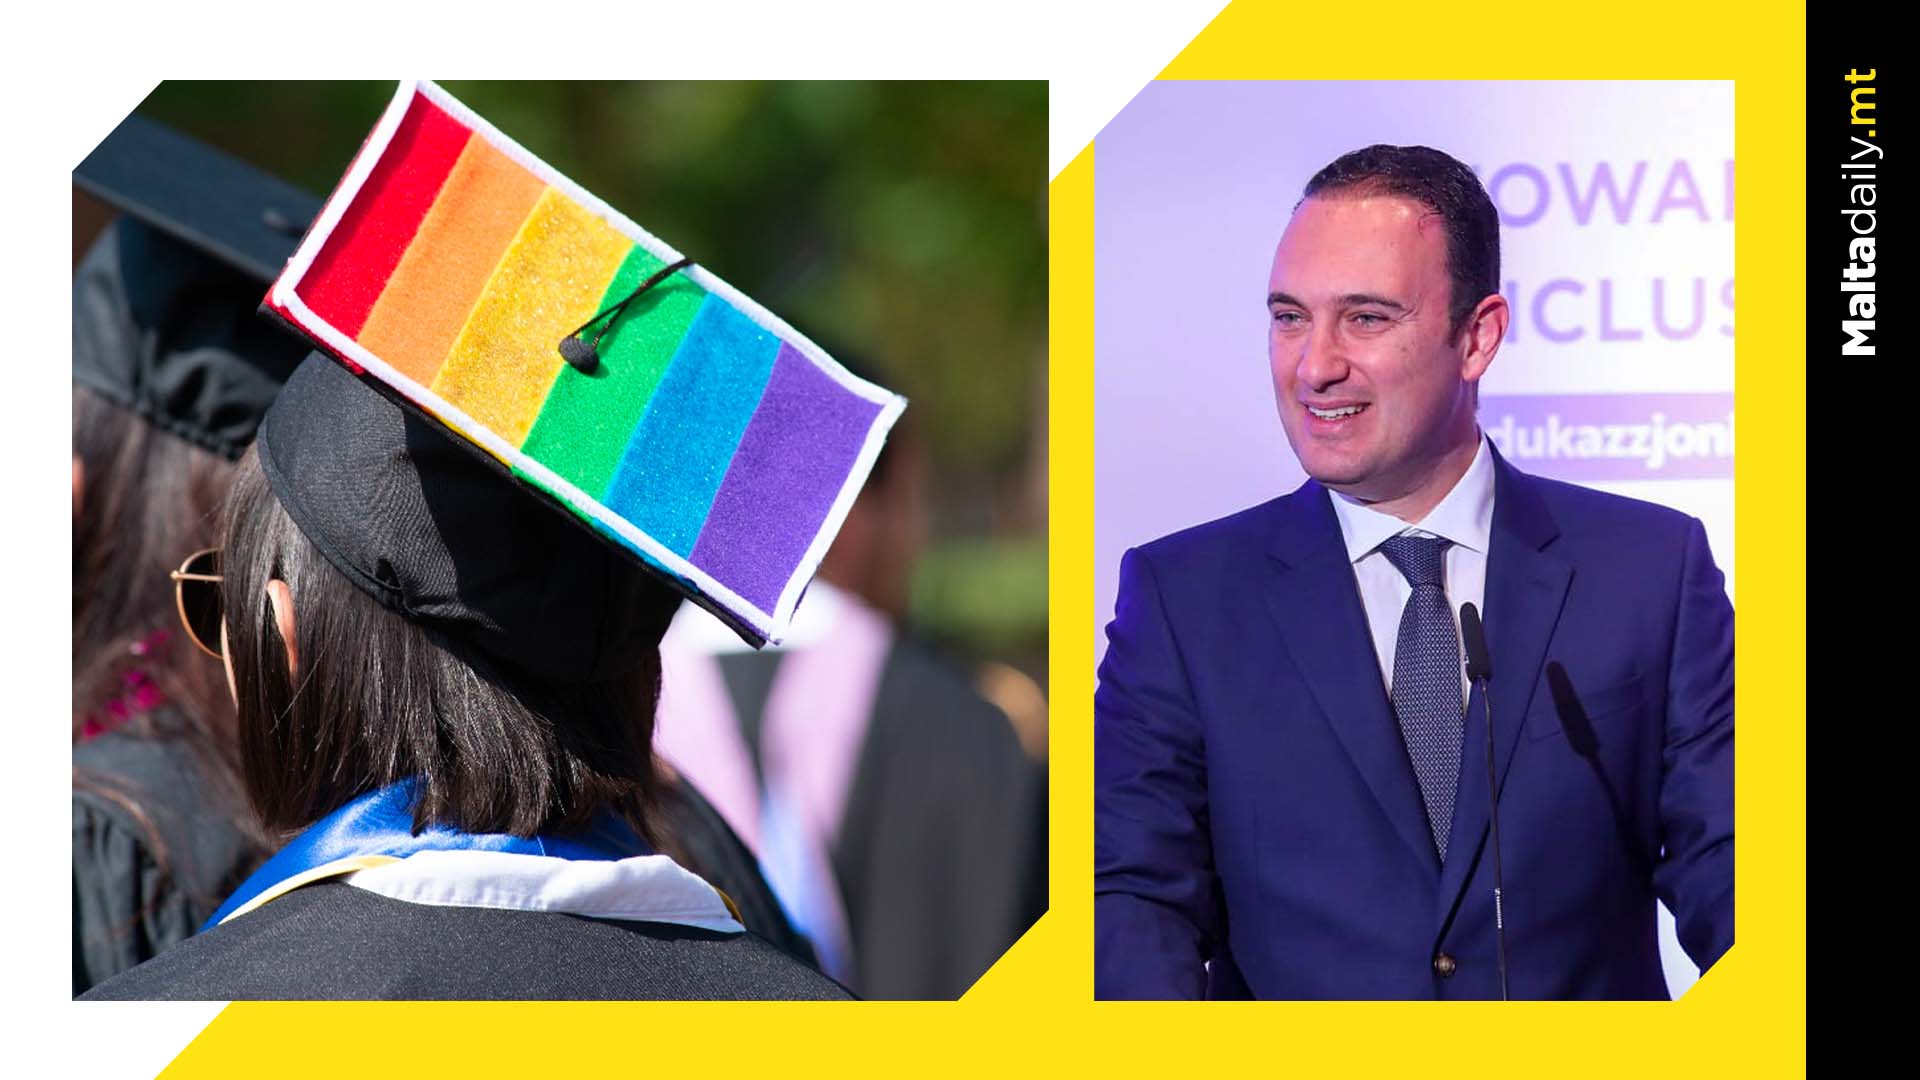 New policy aims to make Maltese schools more LGBTIQ+ inclusive